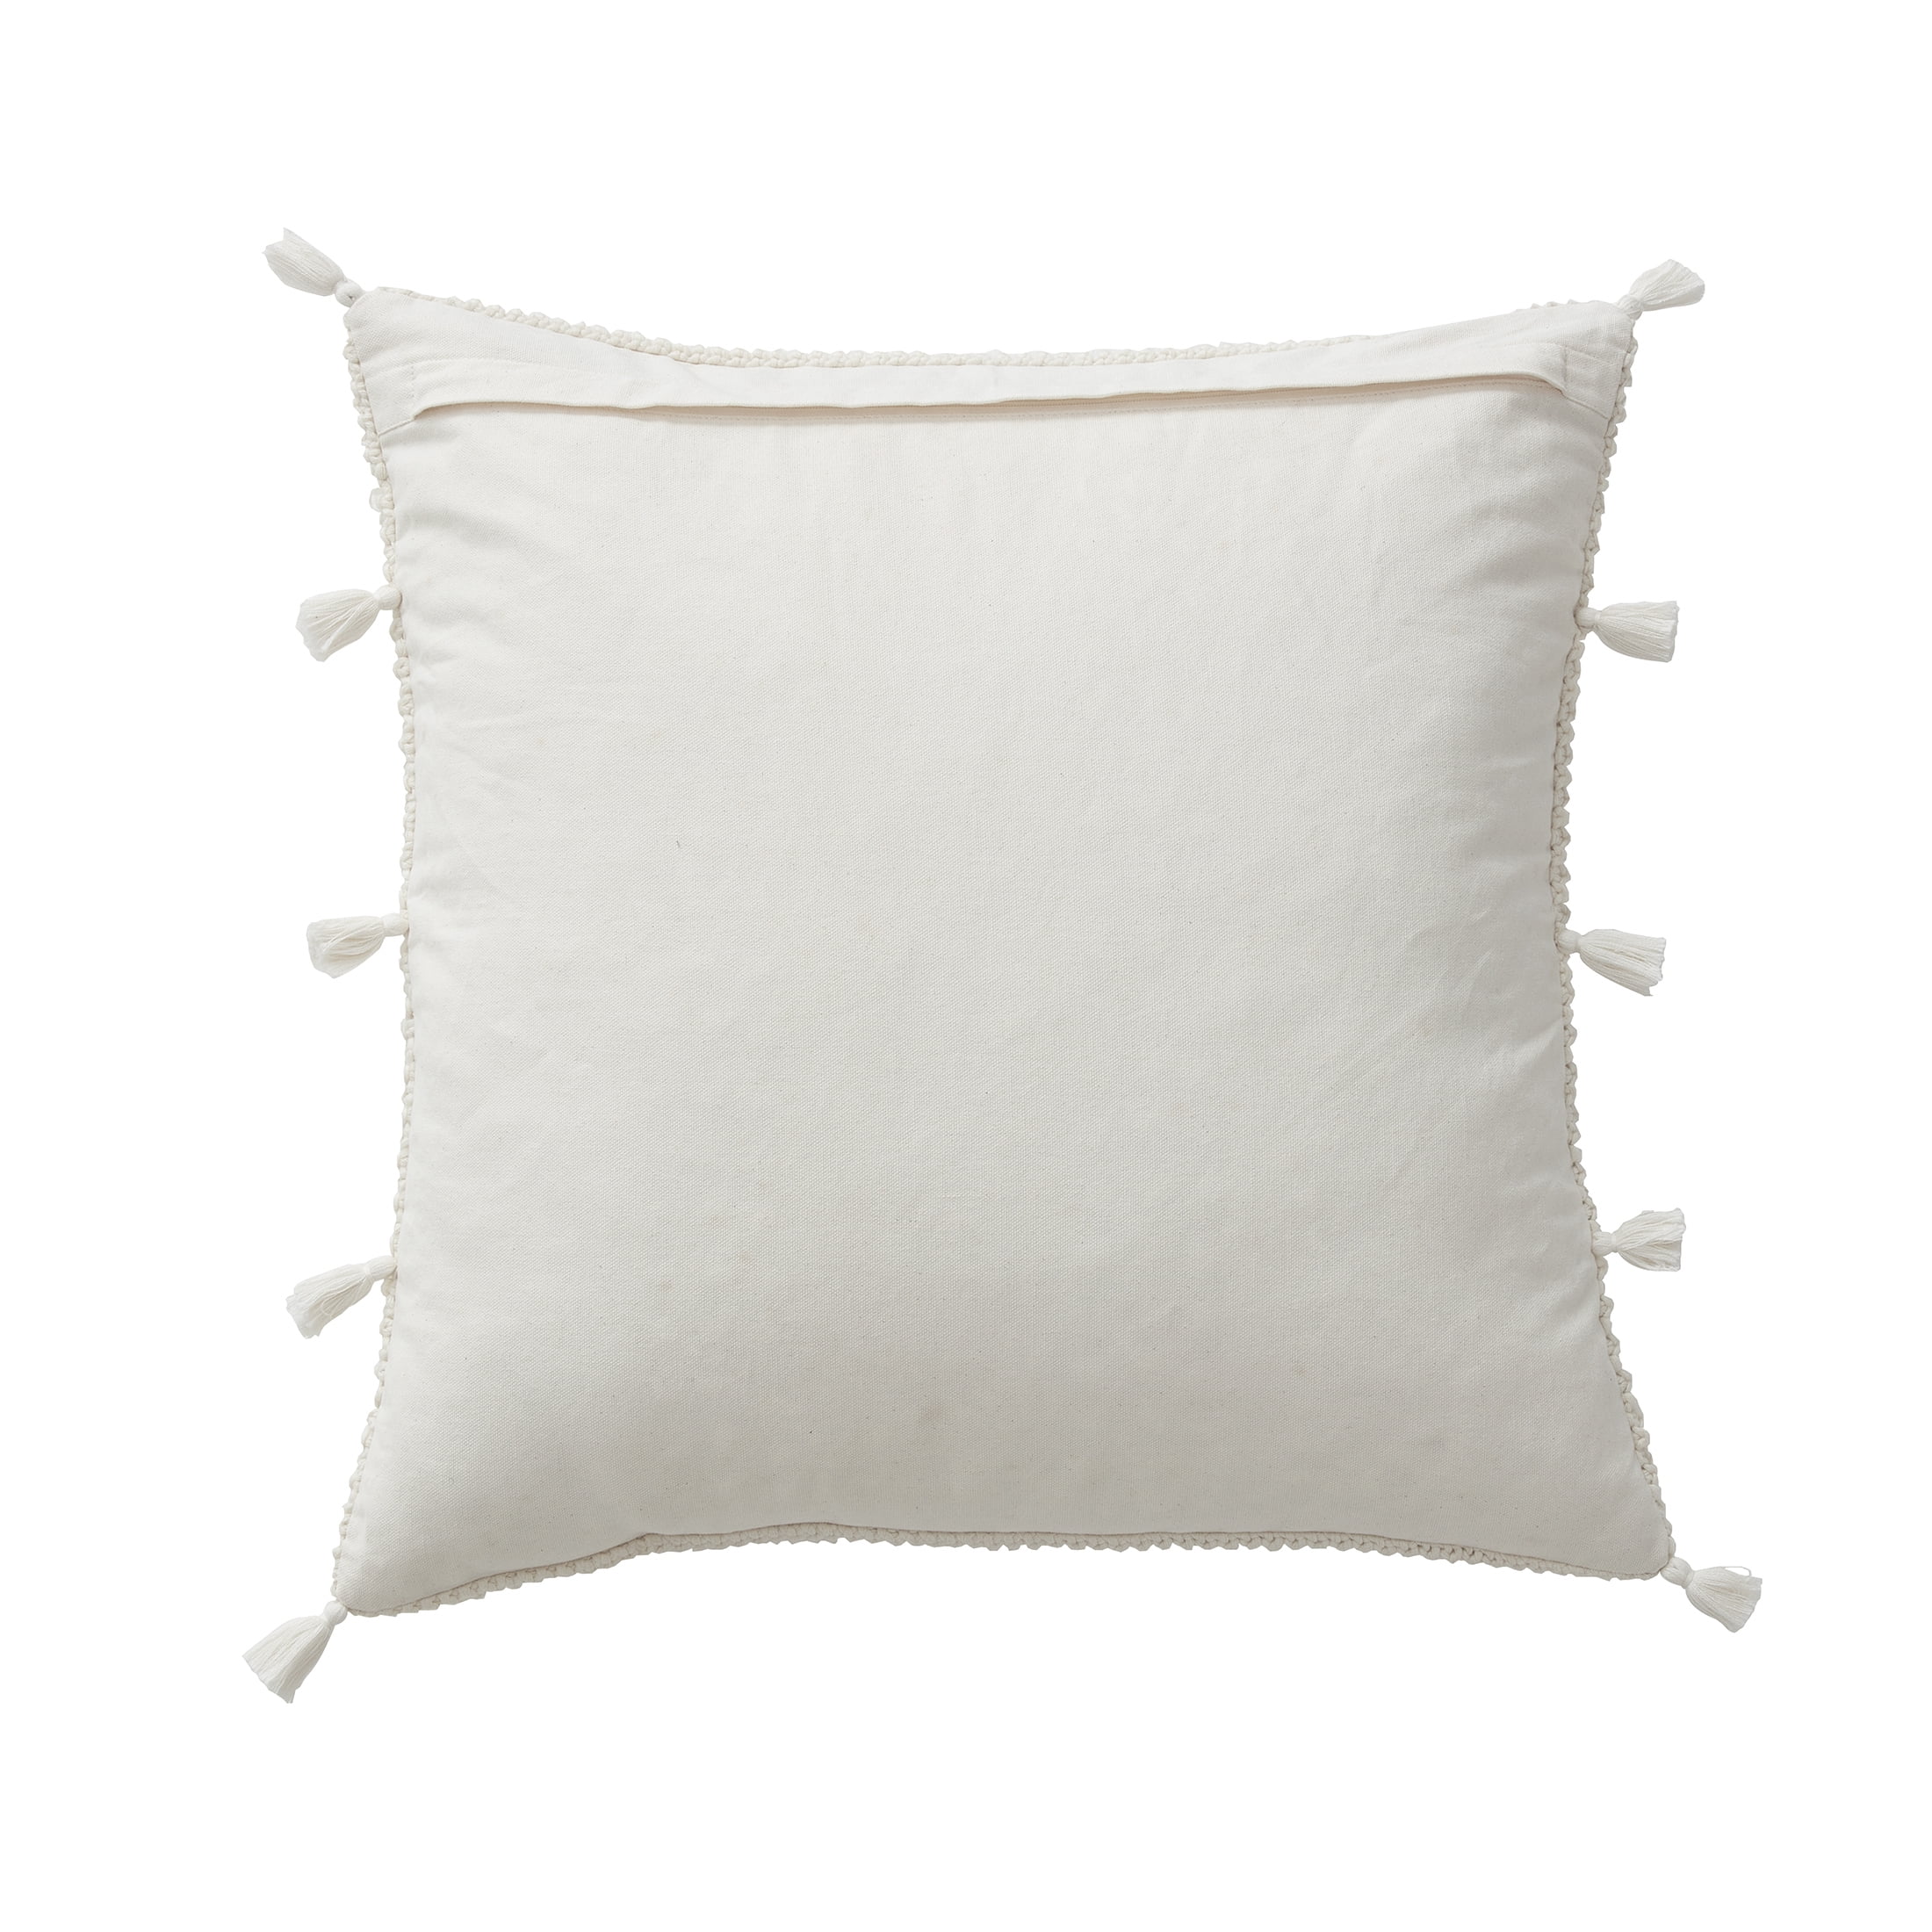 Golden Velvet Extra Skinny Long Lumbar Pillow with Tassels 